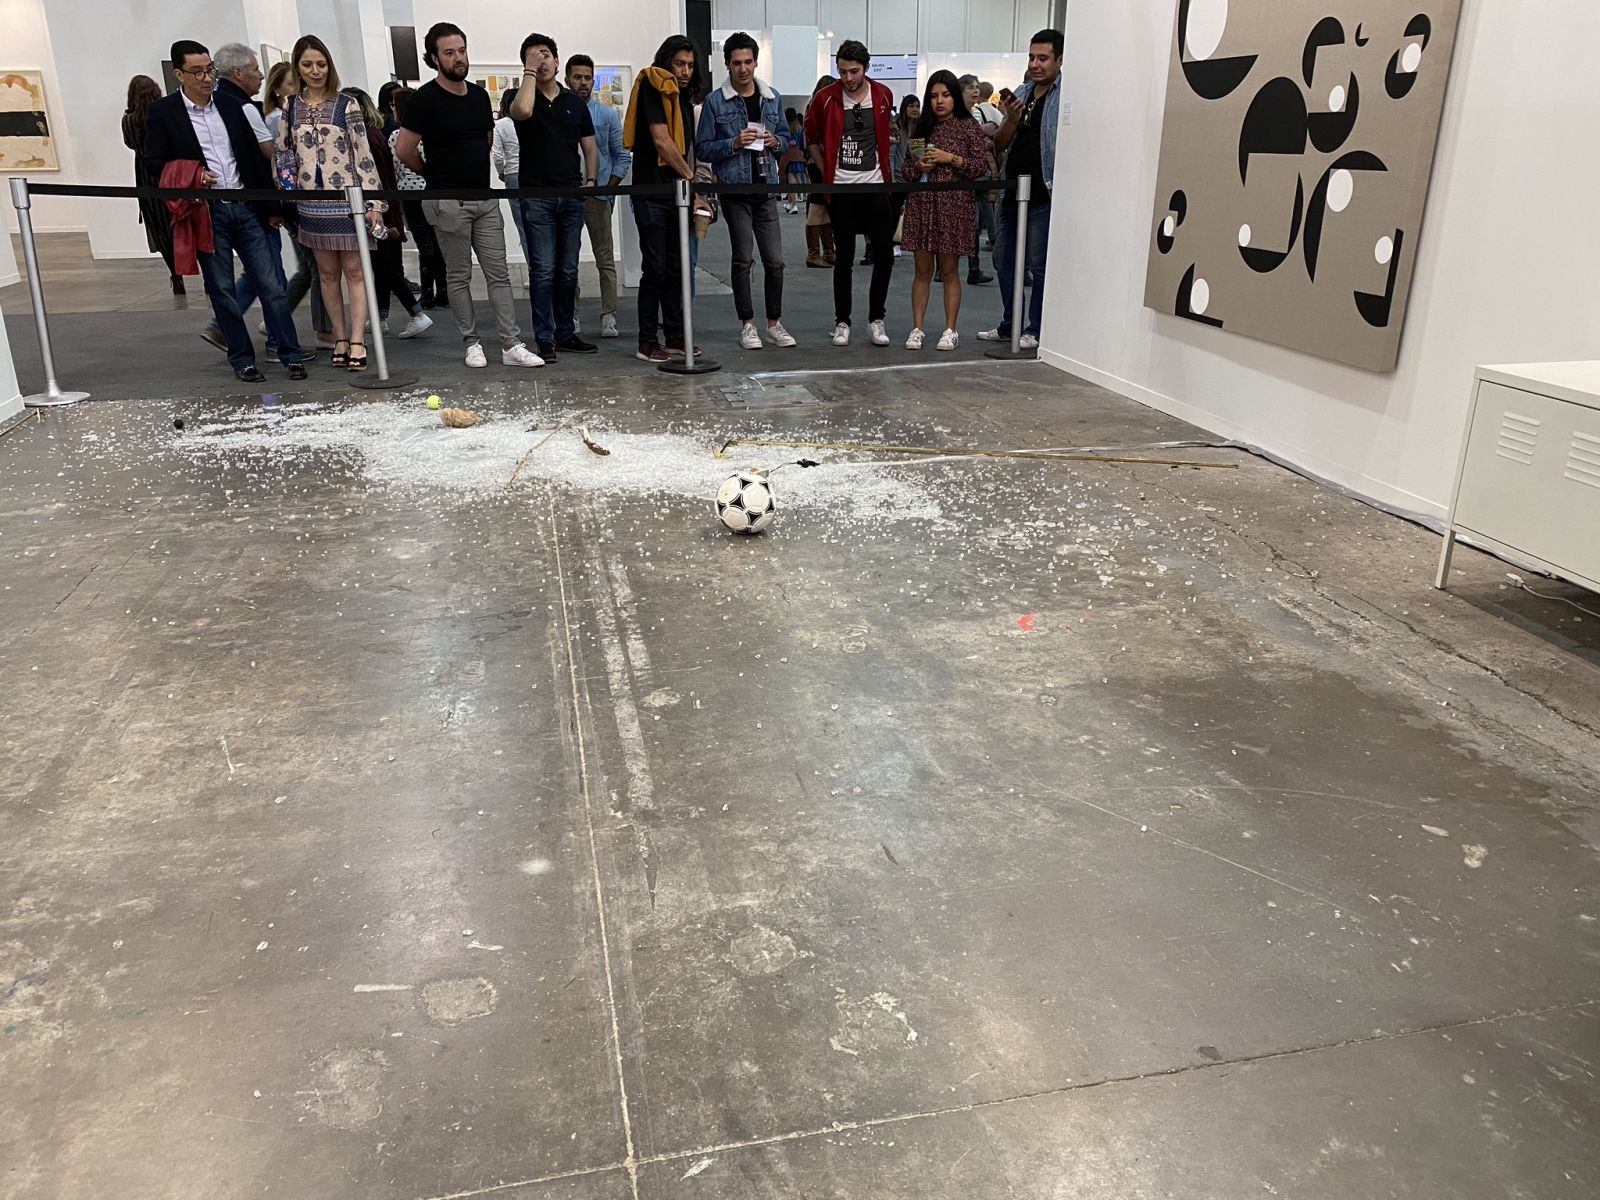 Курьезы: критик разбила арт-объект за 20 тыс. долл. на выставке в Мексике, фото — twitter.com/grazalce